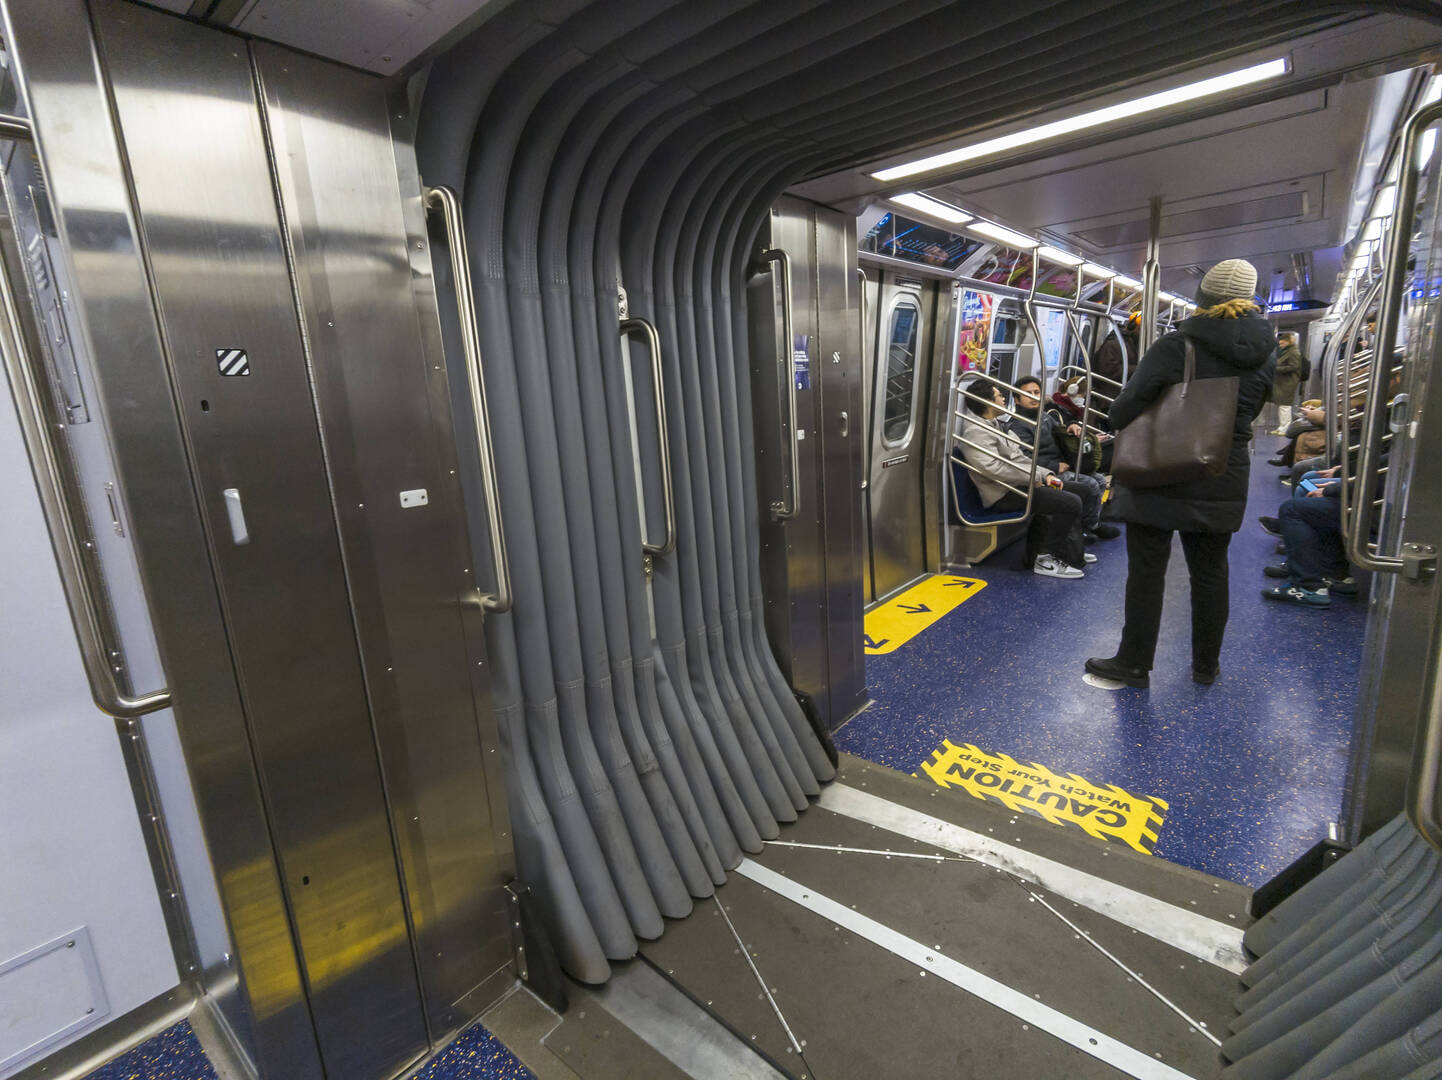 قطار في مترو نيويورك يصدم رجلا والمارة يتفرجون (فيديو)